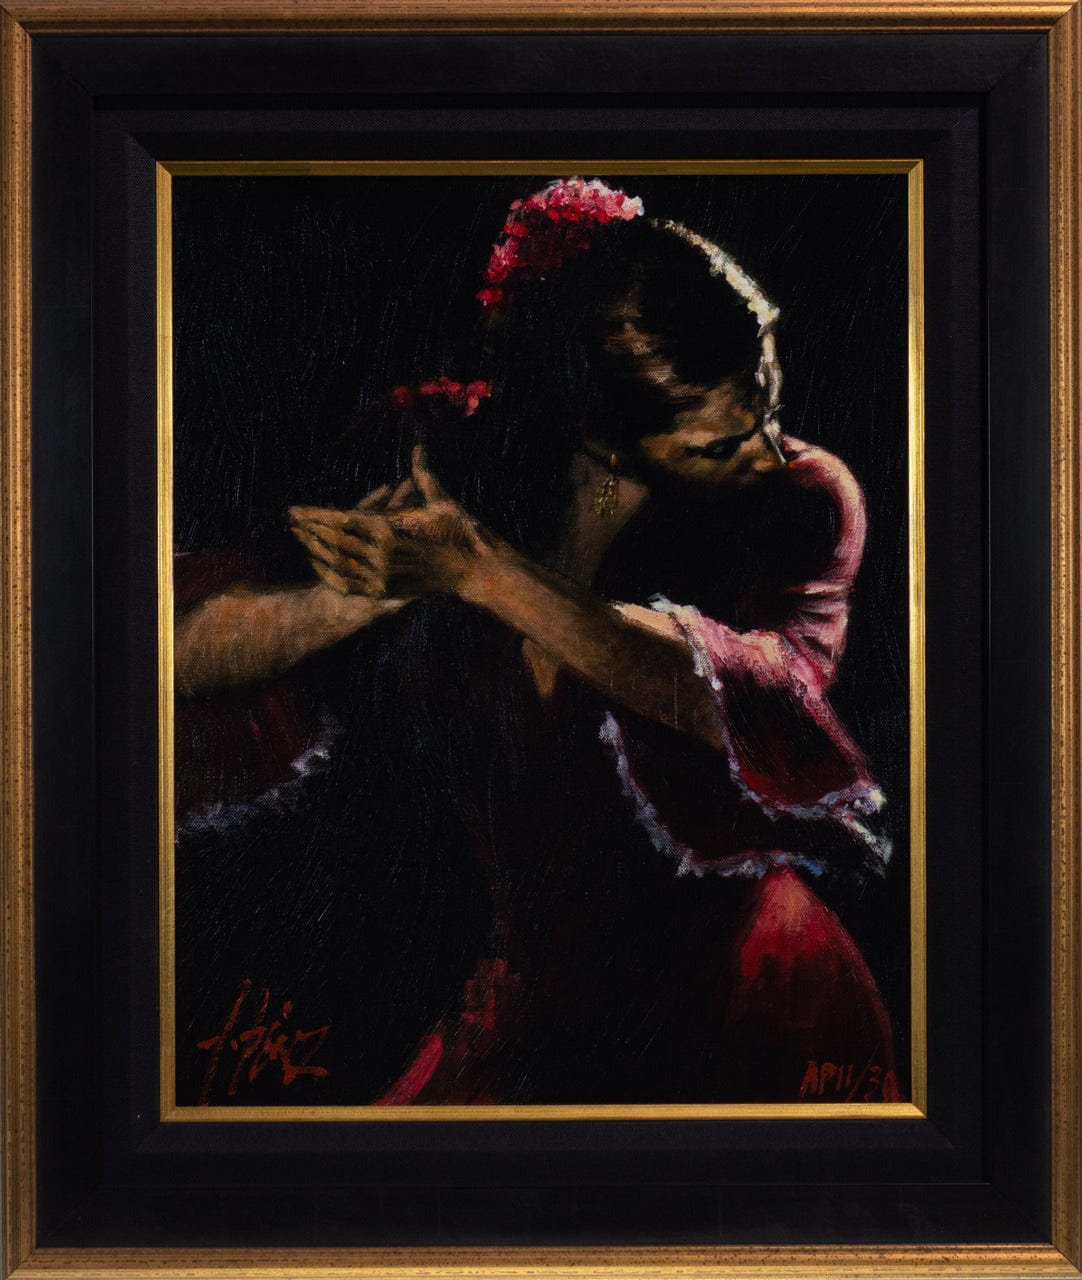 Fabian Perez; "Flamenco V" Framed